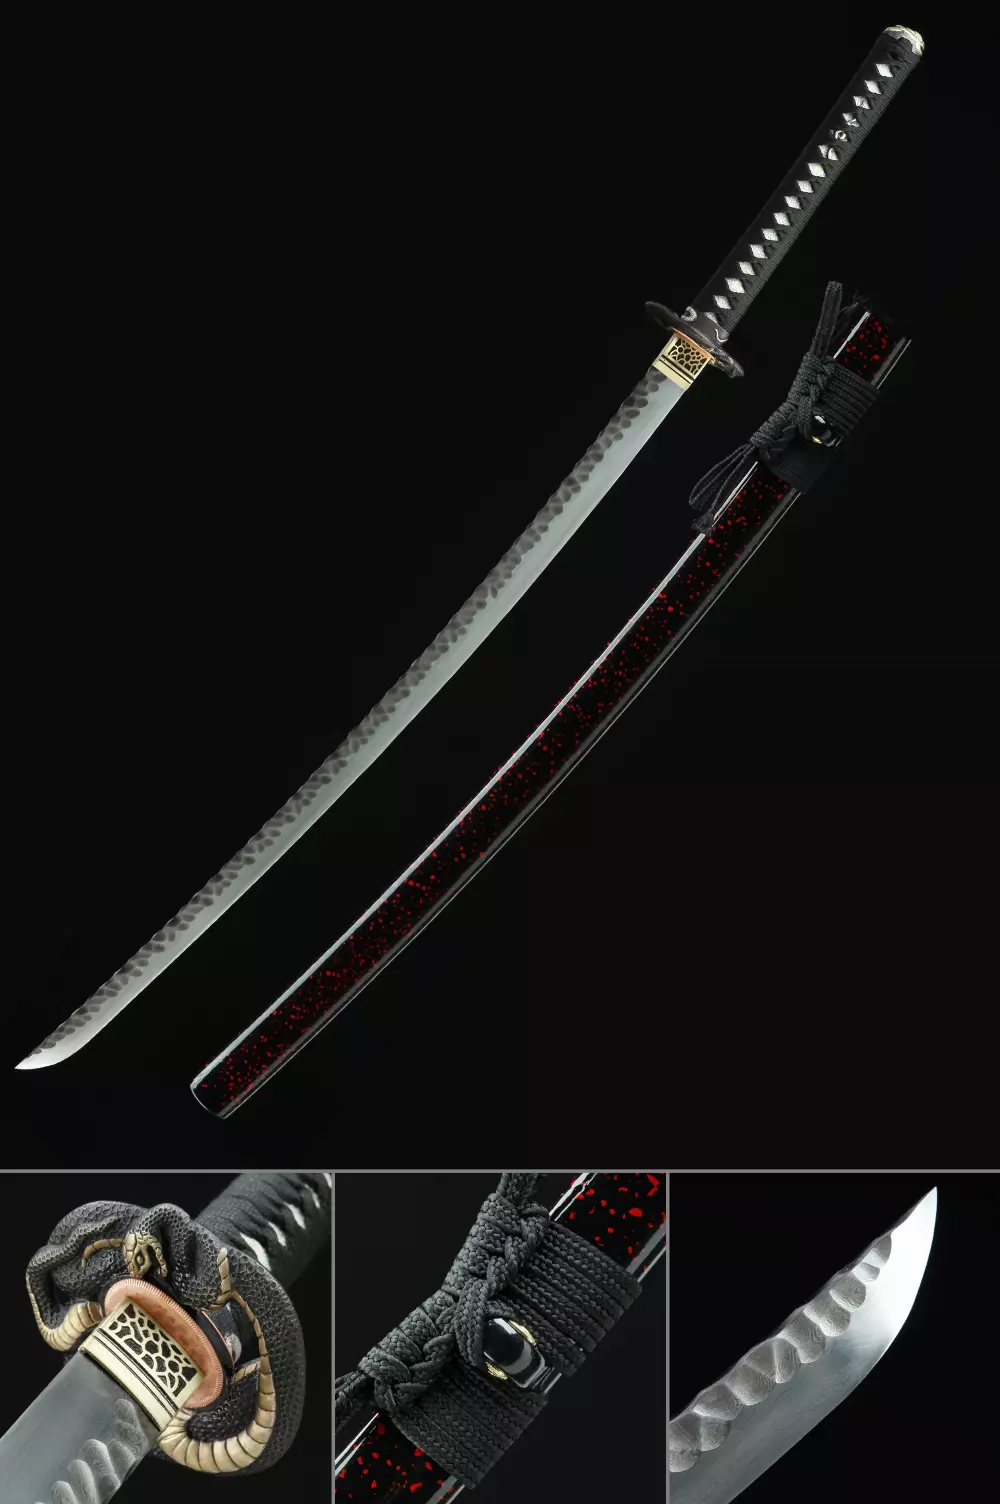 Damascus Steel Full Tang Katana Handmade Japanese Samurai Sword Battle Ready 41" 